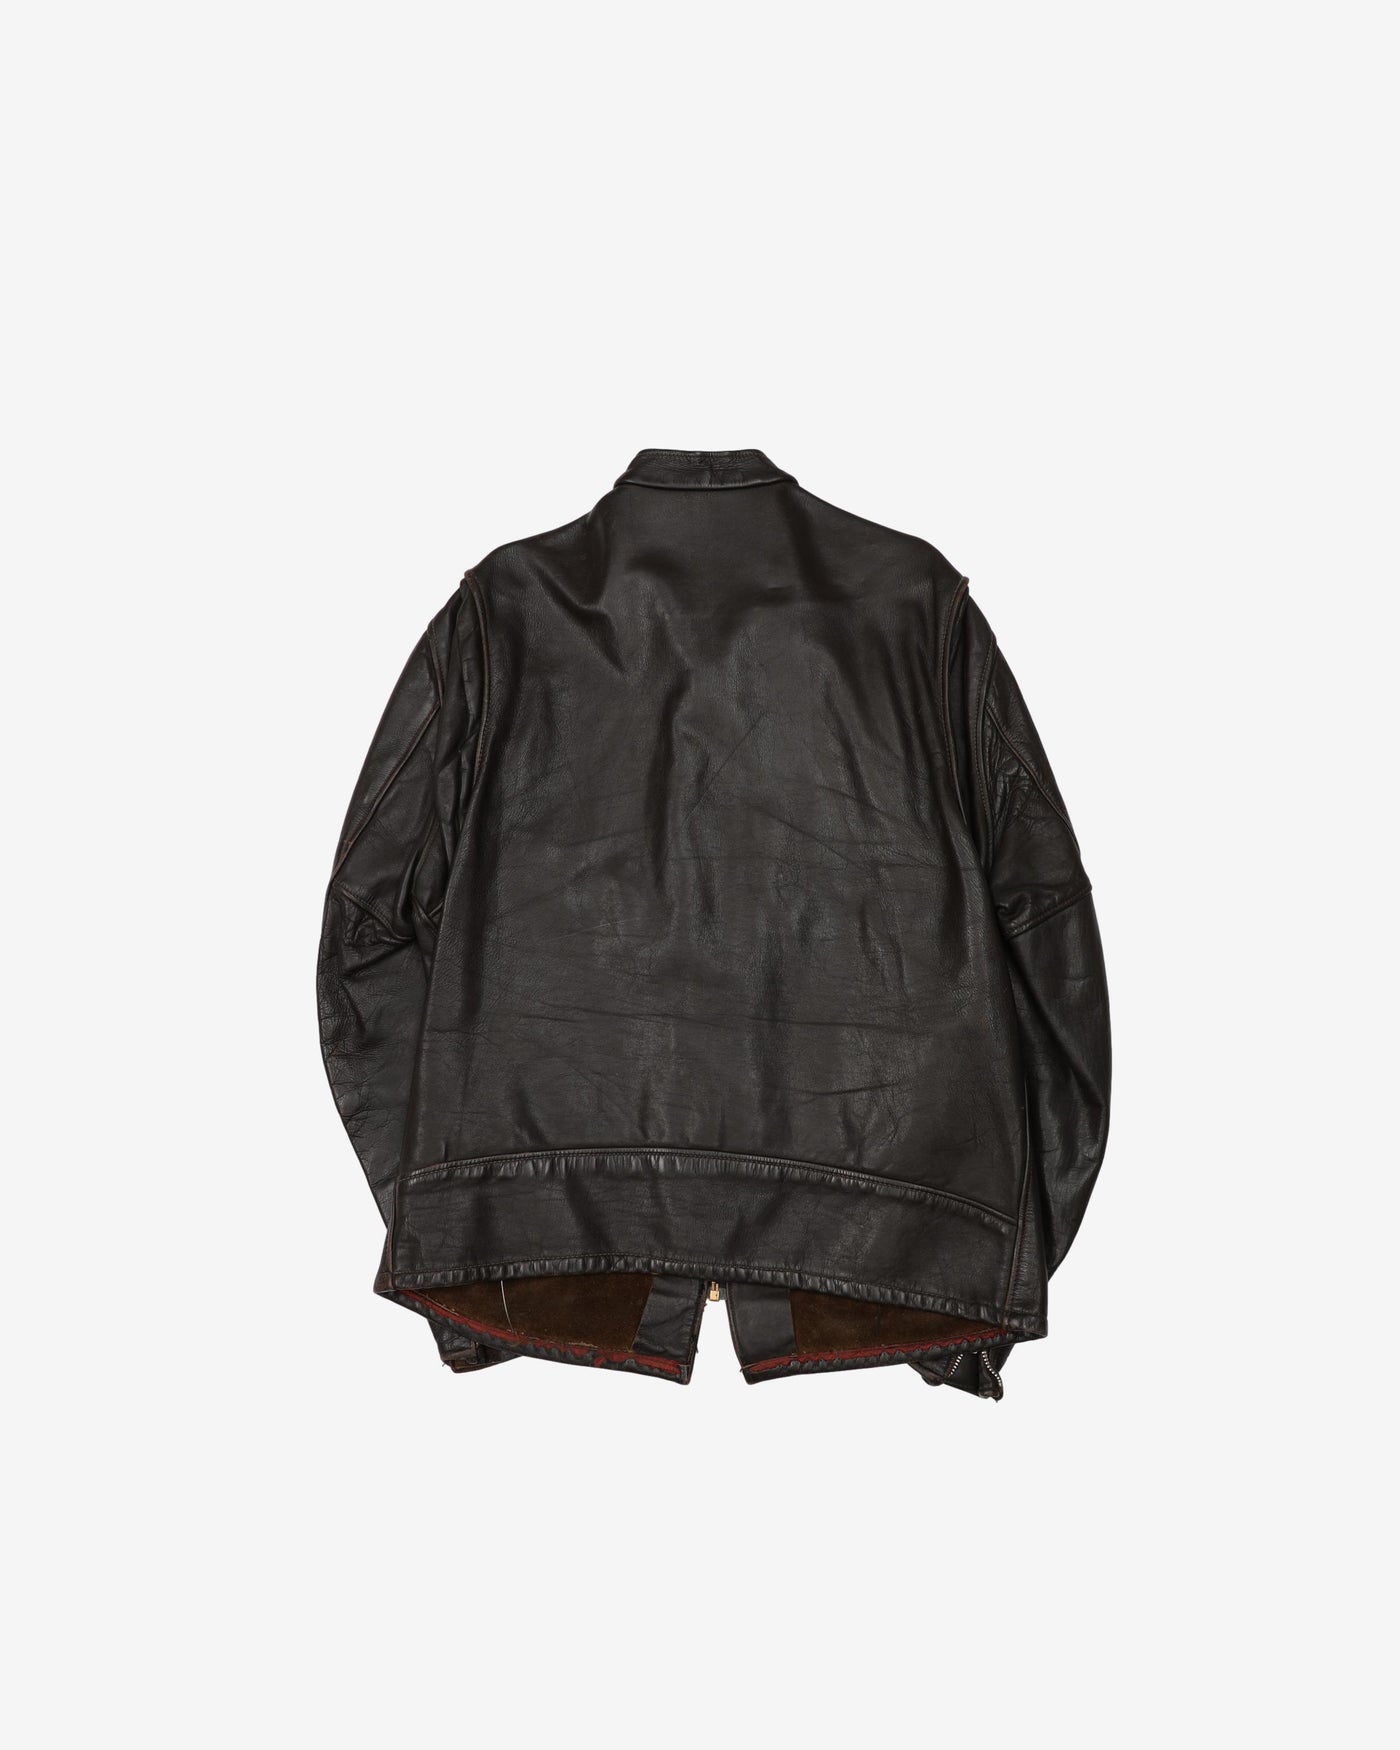 Vintage 50s/60s Dark Brown Leather Jacket - L